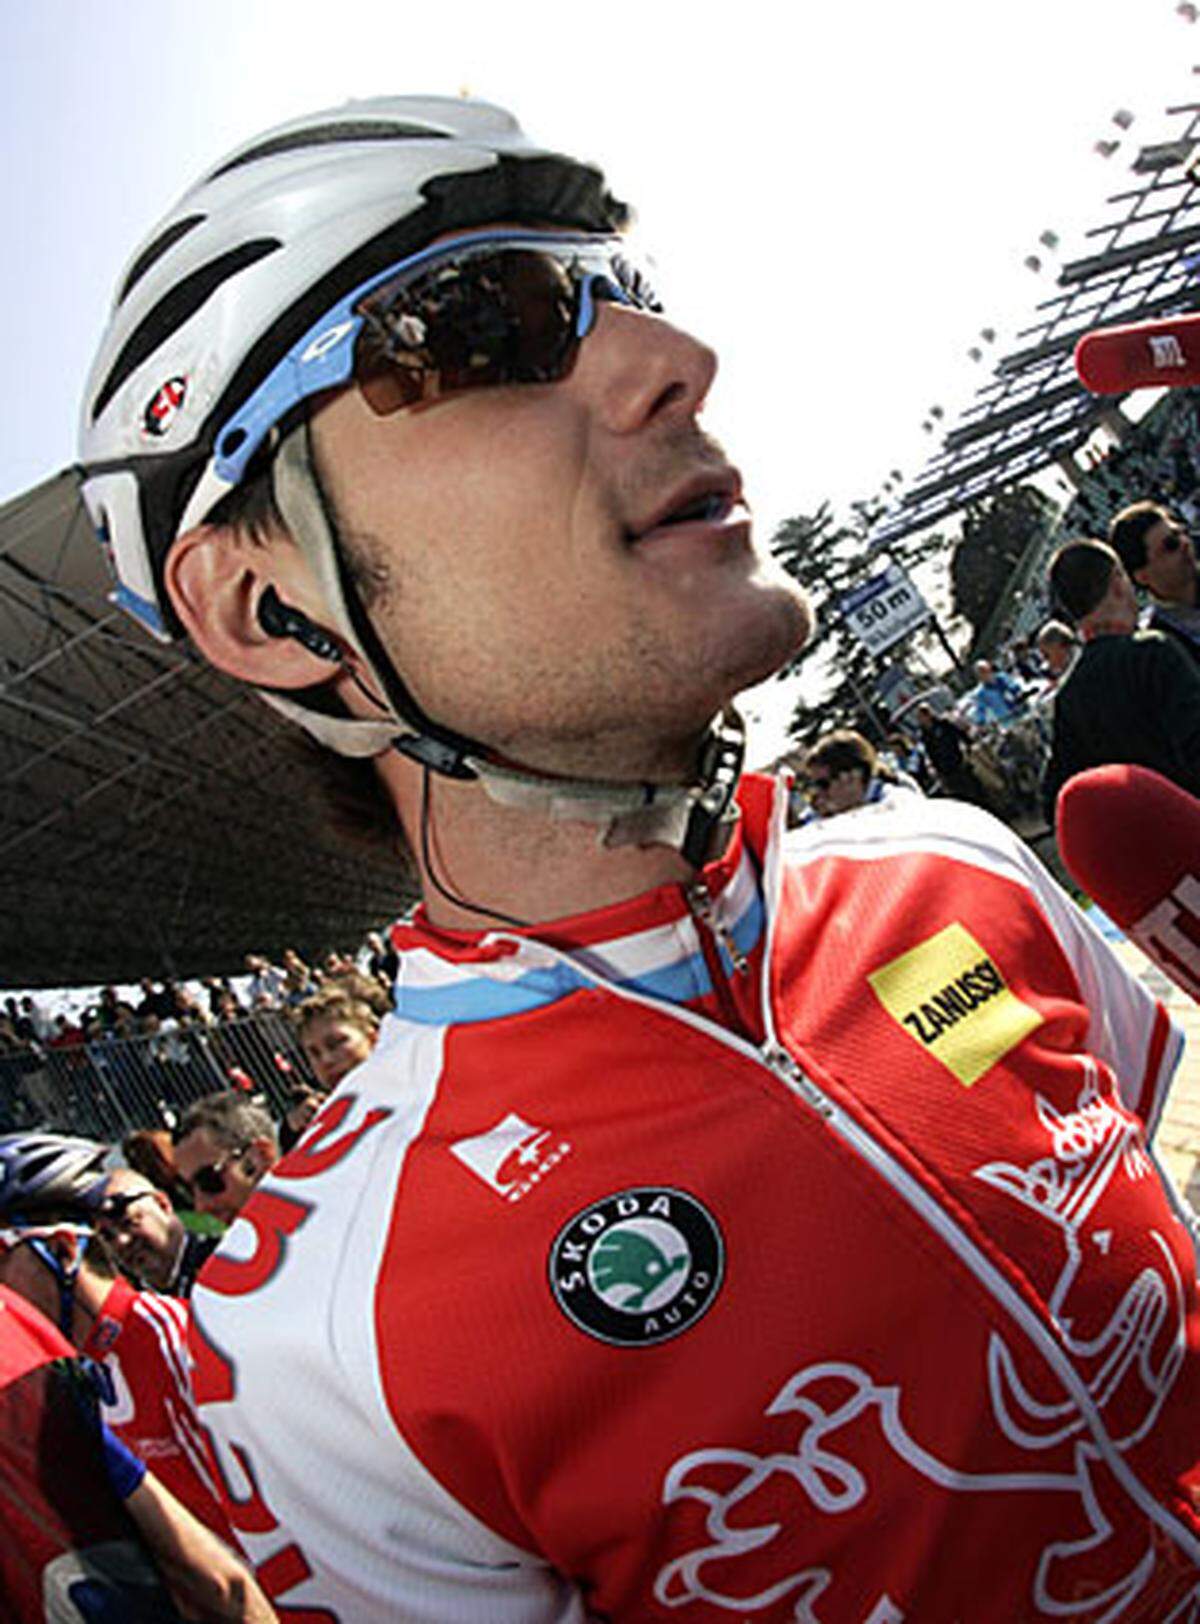 Der Luxemburger Fränk Schleck gesteht, 7000 Euro an den mutmaßlichen Dopingarzt Eufemiano Fuentes überwiesen zu haben. Schlecks Rennstall CSC Saxo Bank suspendiert den 28-Jährigen umgehend. Schleck fuhr bei der Tour de France 2008 drei Tage im Gelben Trikot.